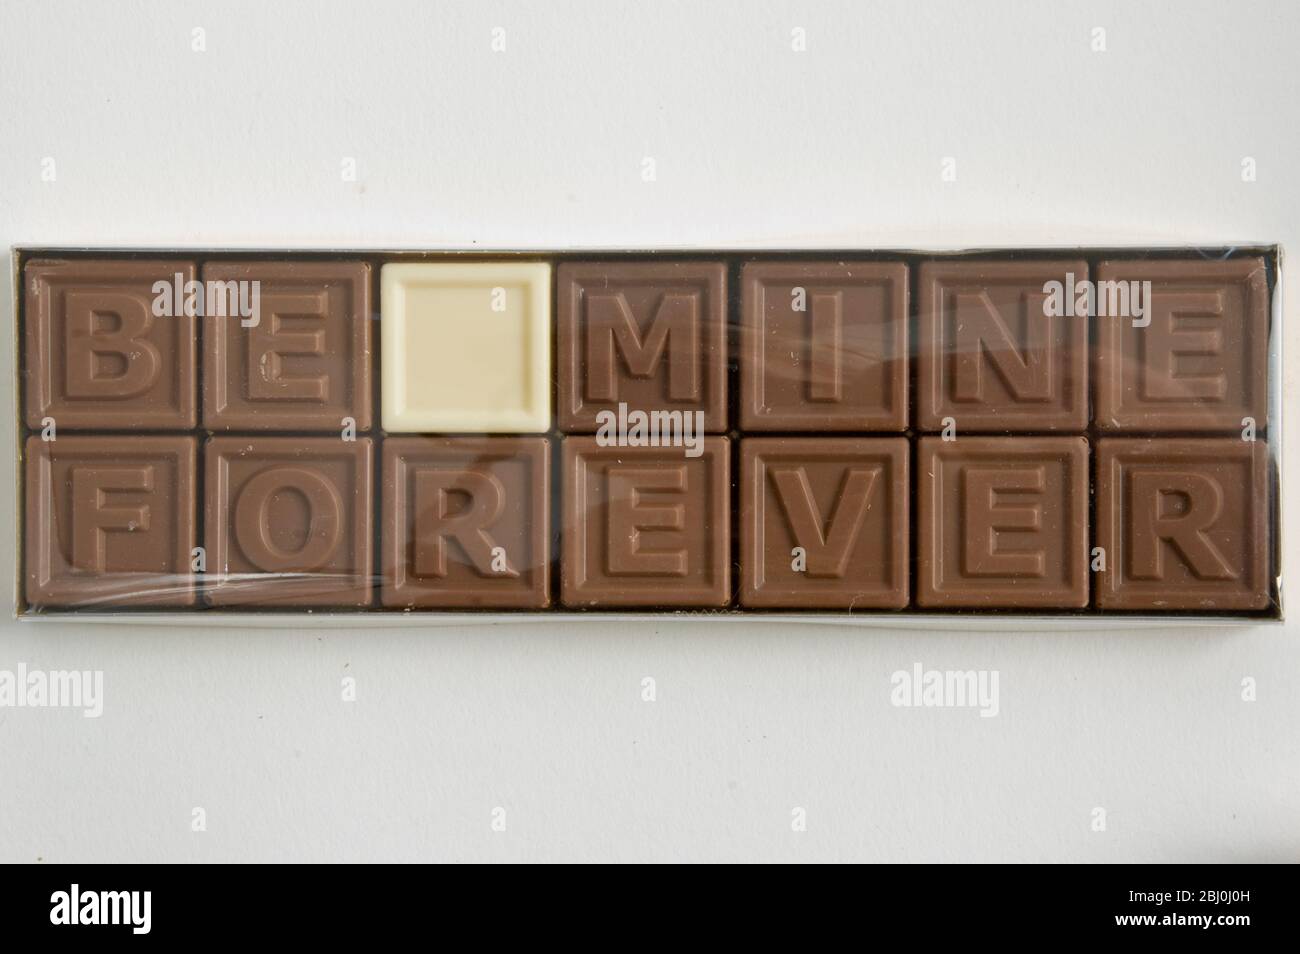 Schokolade Buchstaben mit der Aufschrift "Be Mine Forever" in Cellophan Box als Valentinstag Geschenk - Stockfoto